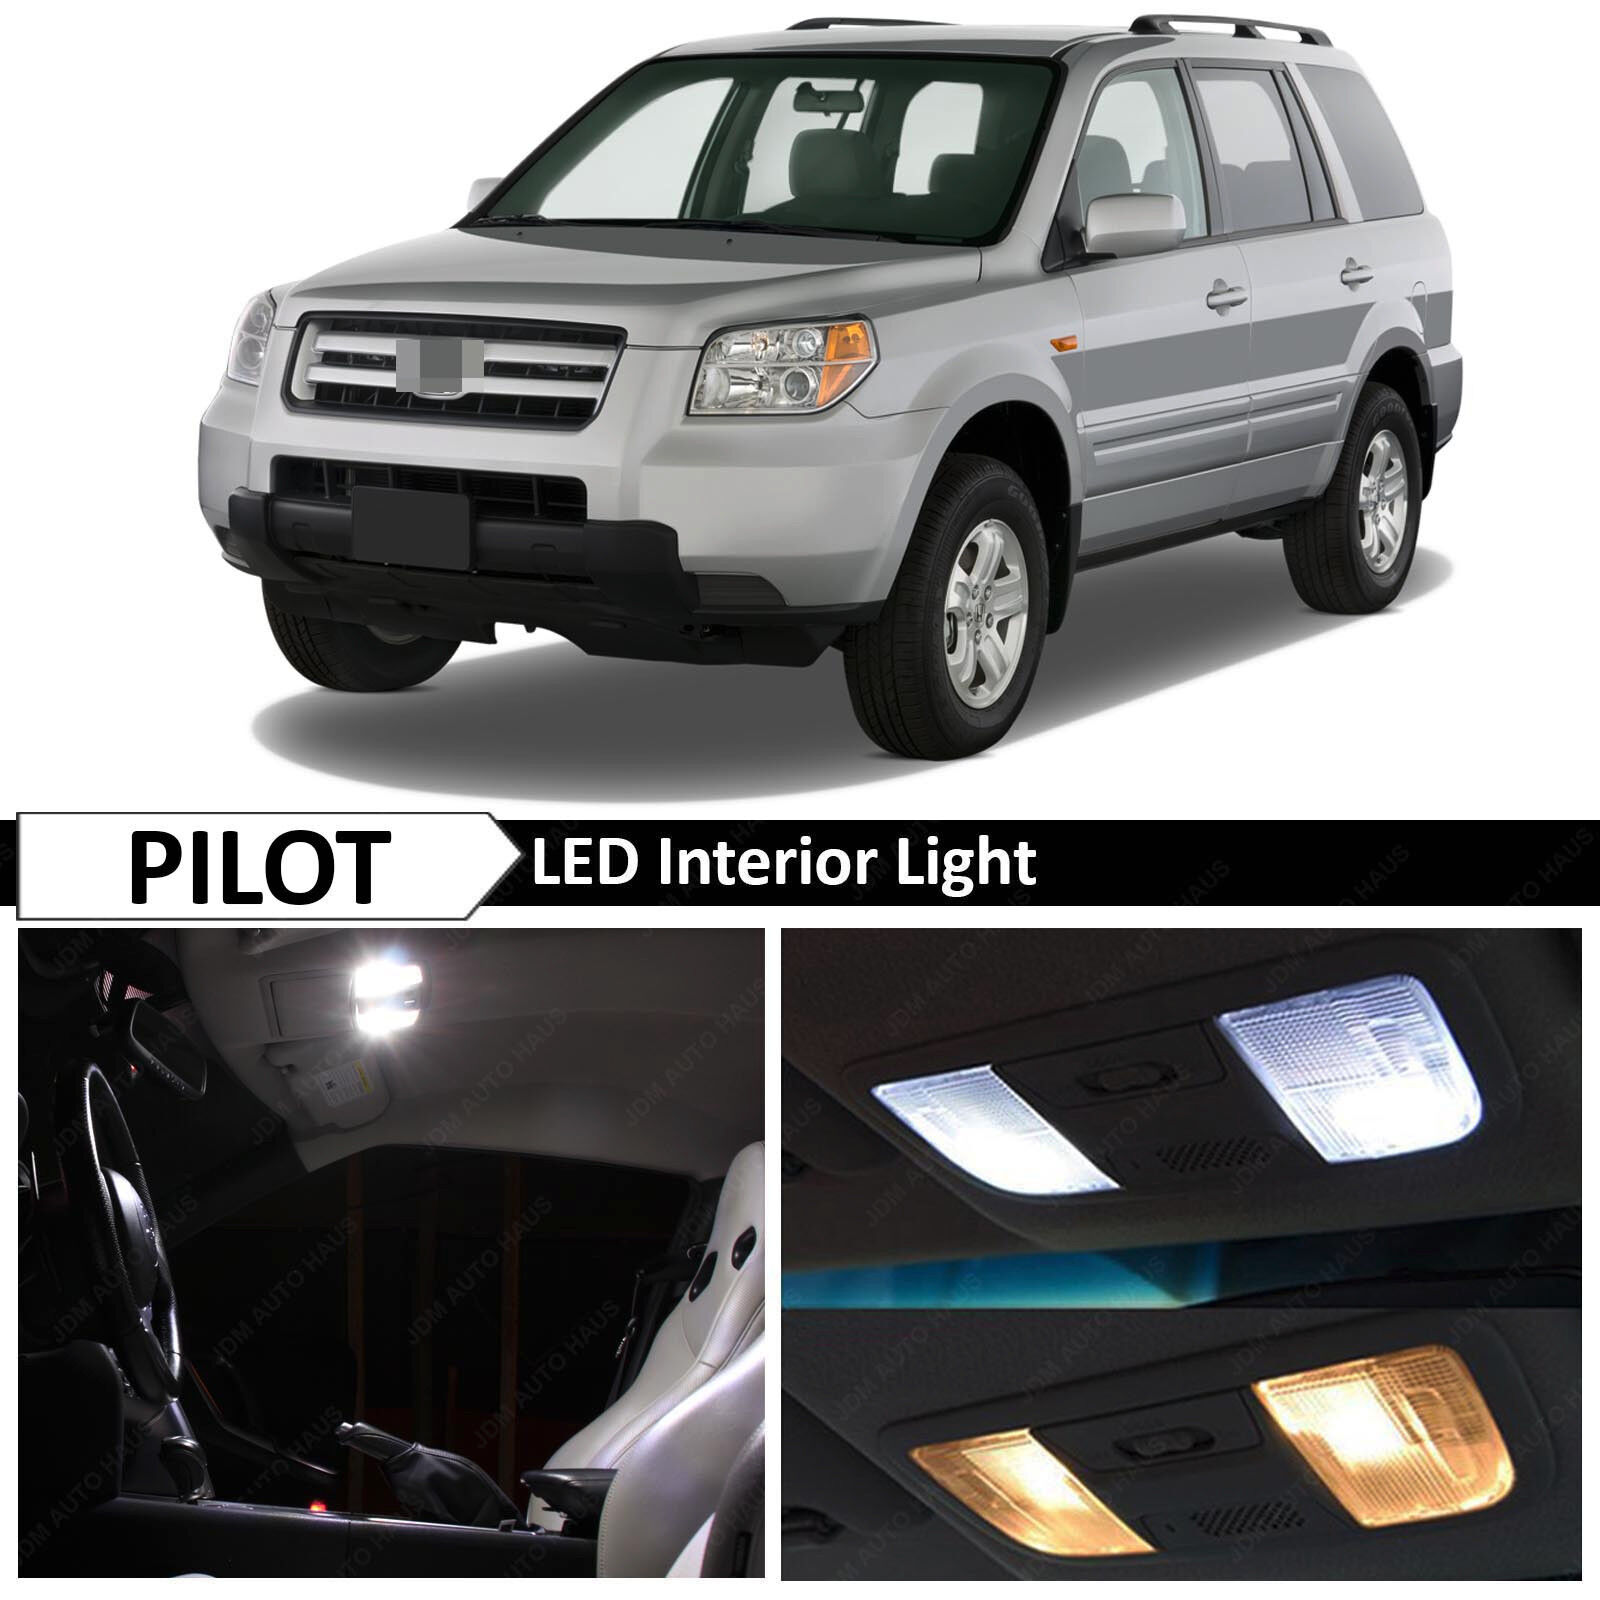 18x White Interior License Plate LED Light Package Kit Fit 2006-2008 Honda Pilot